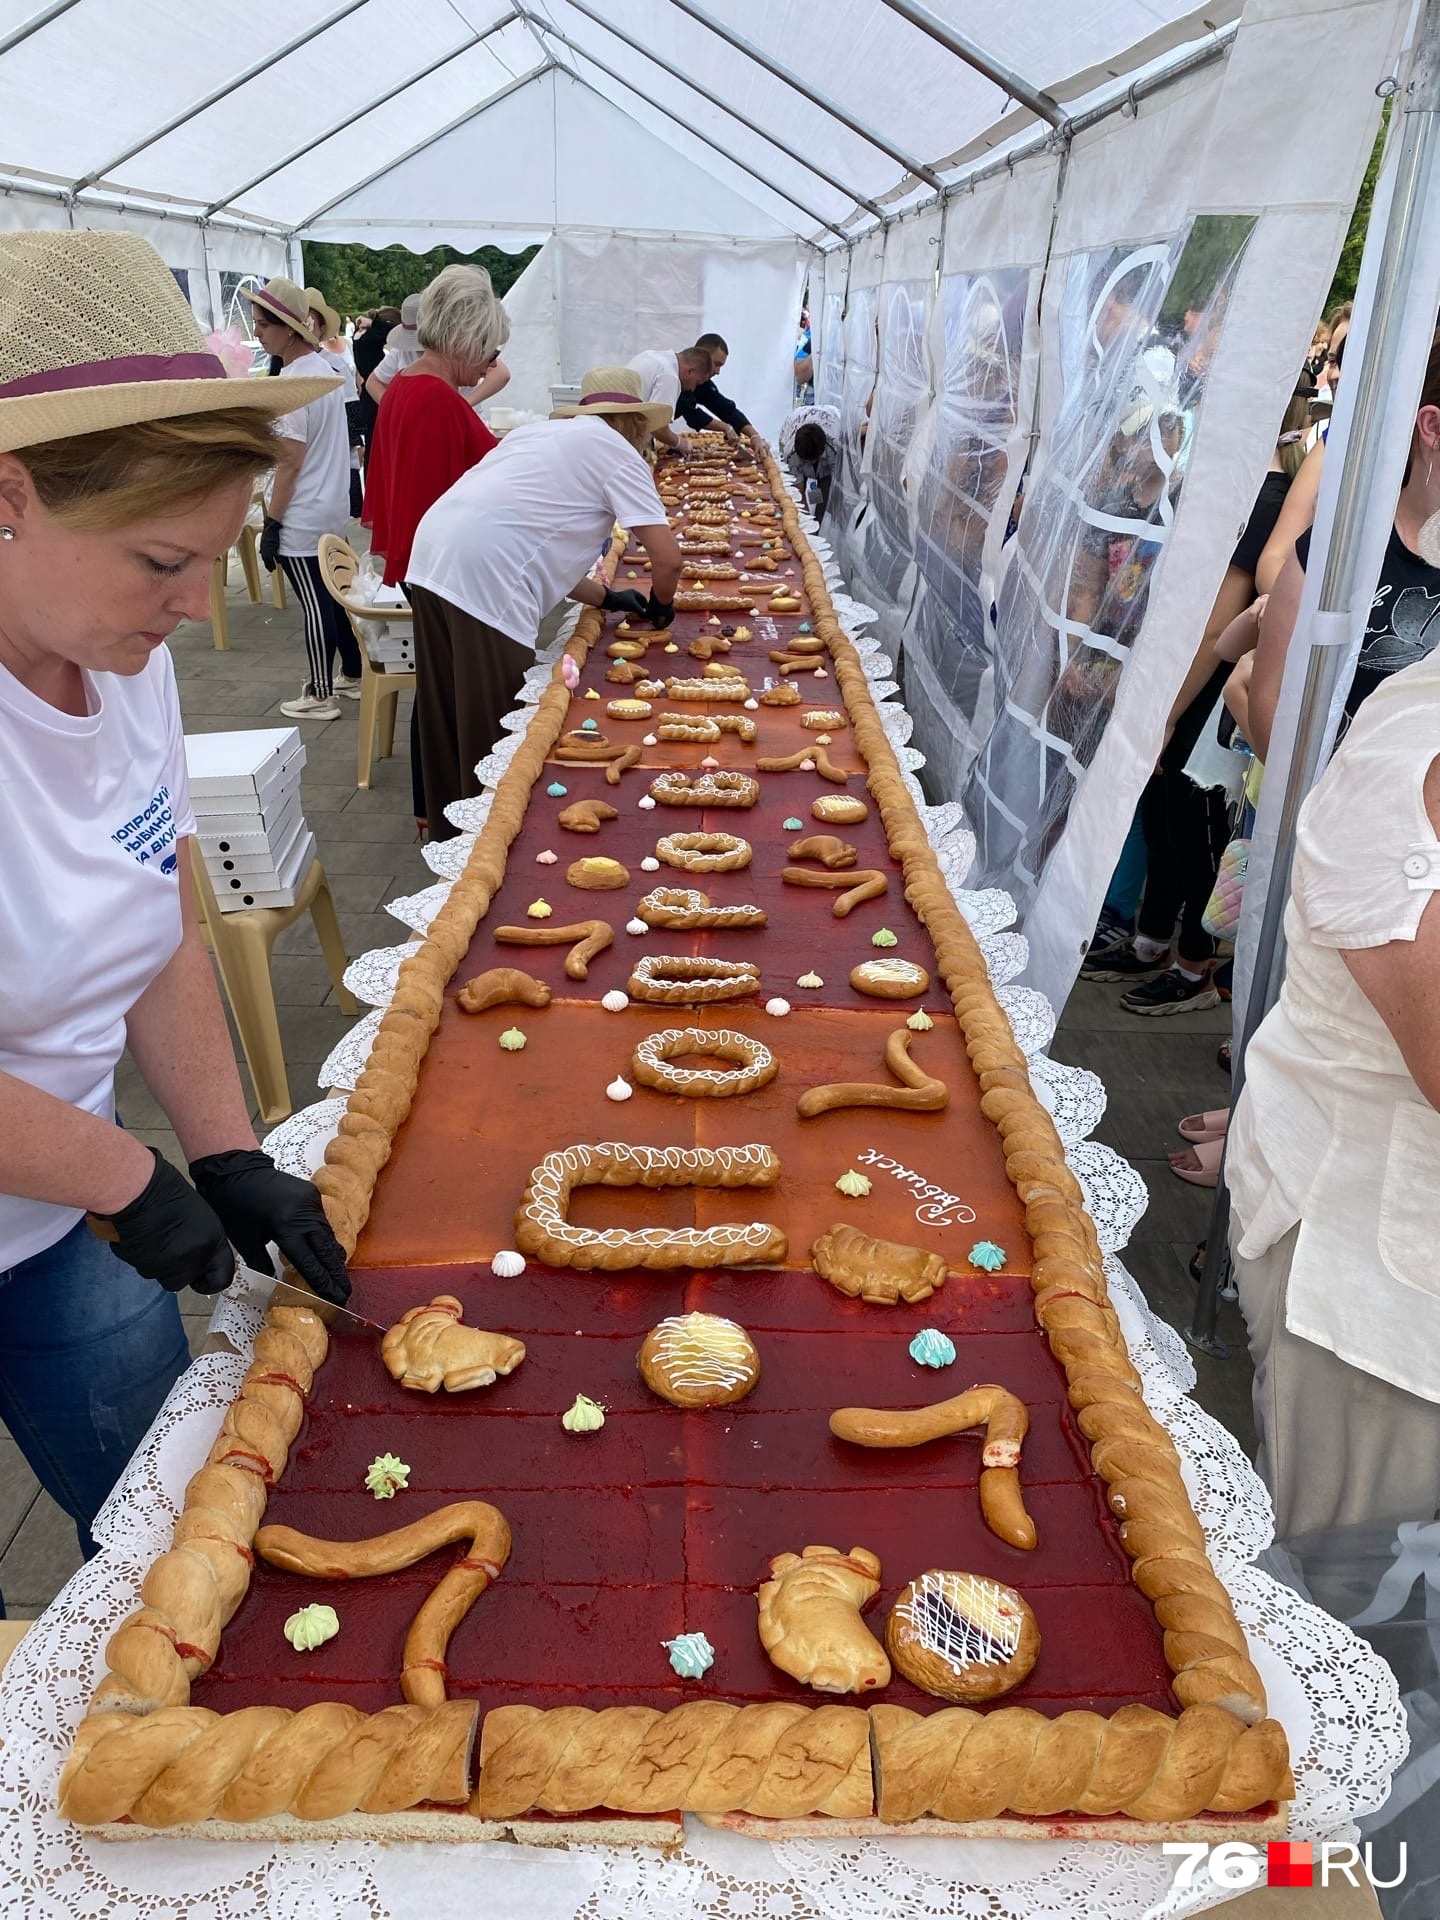 В этом году на праздник в Рыбинске разрезали 10-метровый пирог. Один кусочек стоил 20 рублей. По сообщениям организаторов, деньги будут потрачены на благотворительность. Оплату принимали только наличными